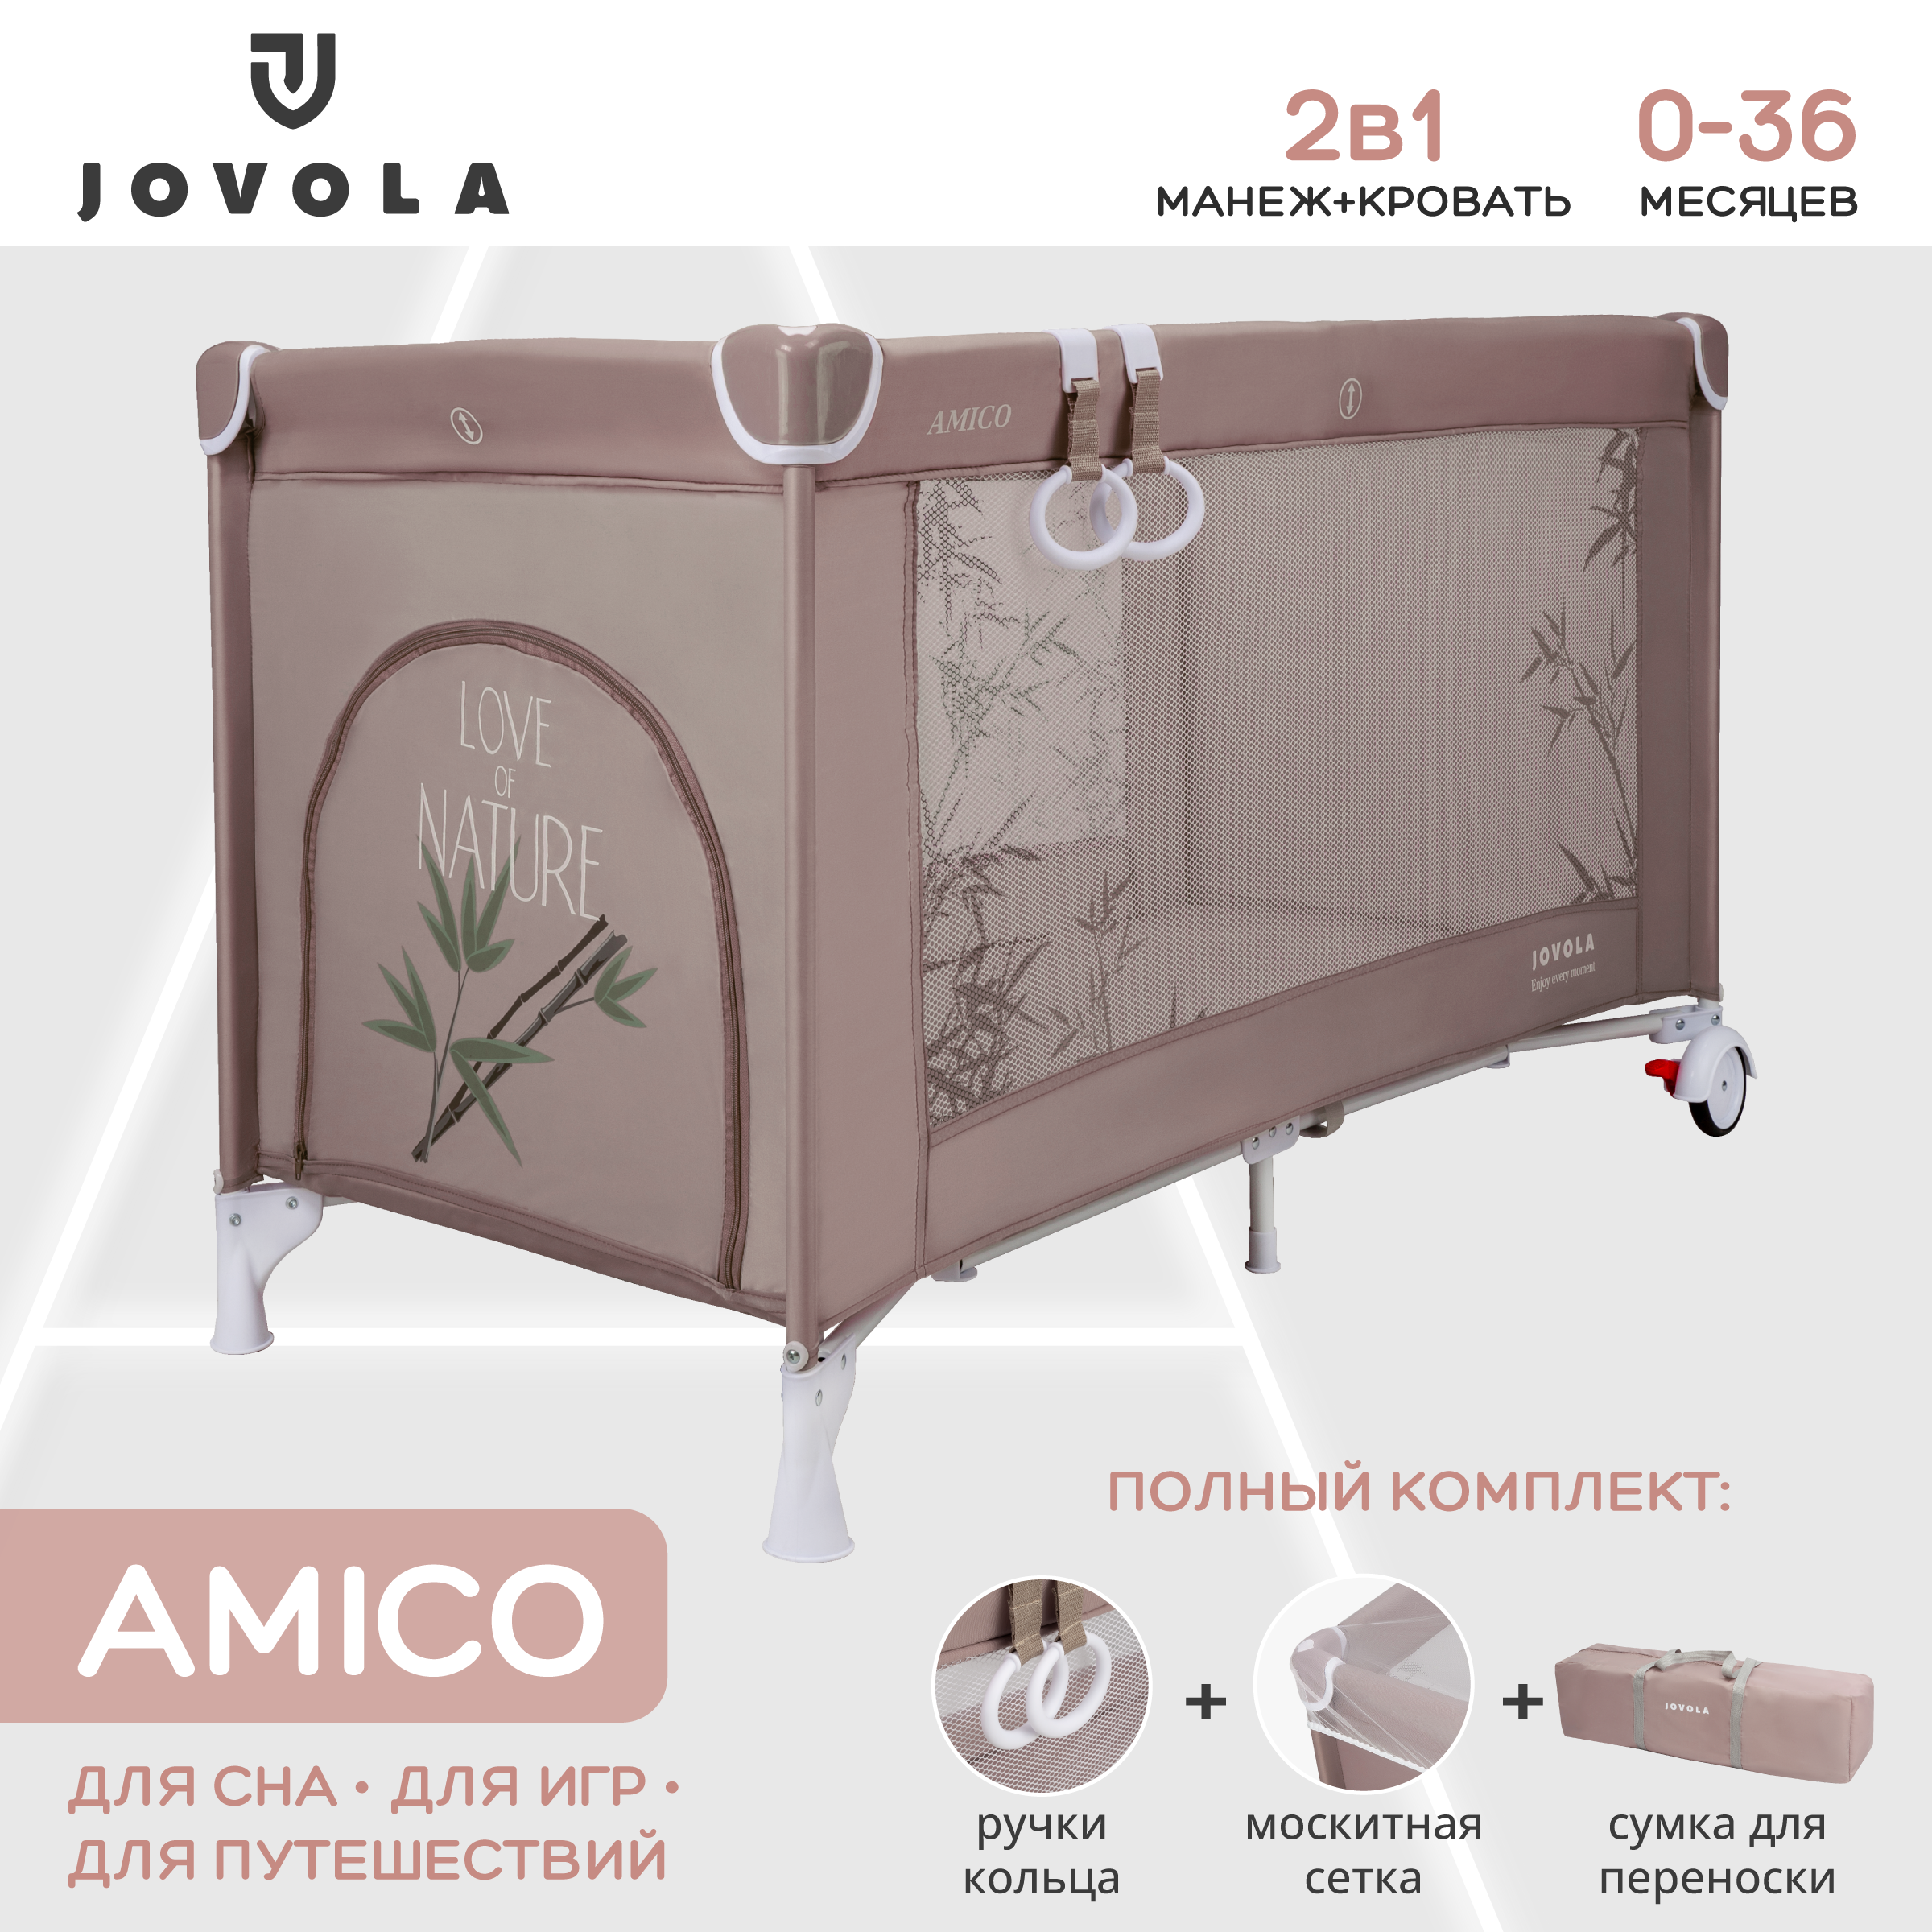 Манеж кровать детский Indigo JOVOLA AMICO складной 1 уровень мокко бамбук bambola москитная сетка на кровать манеж